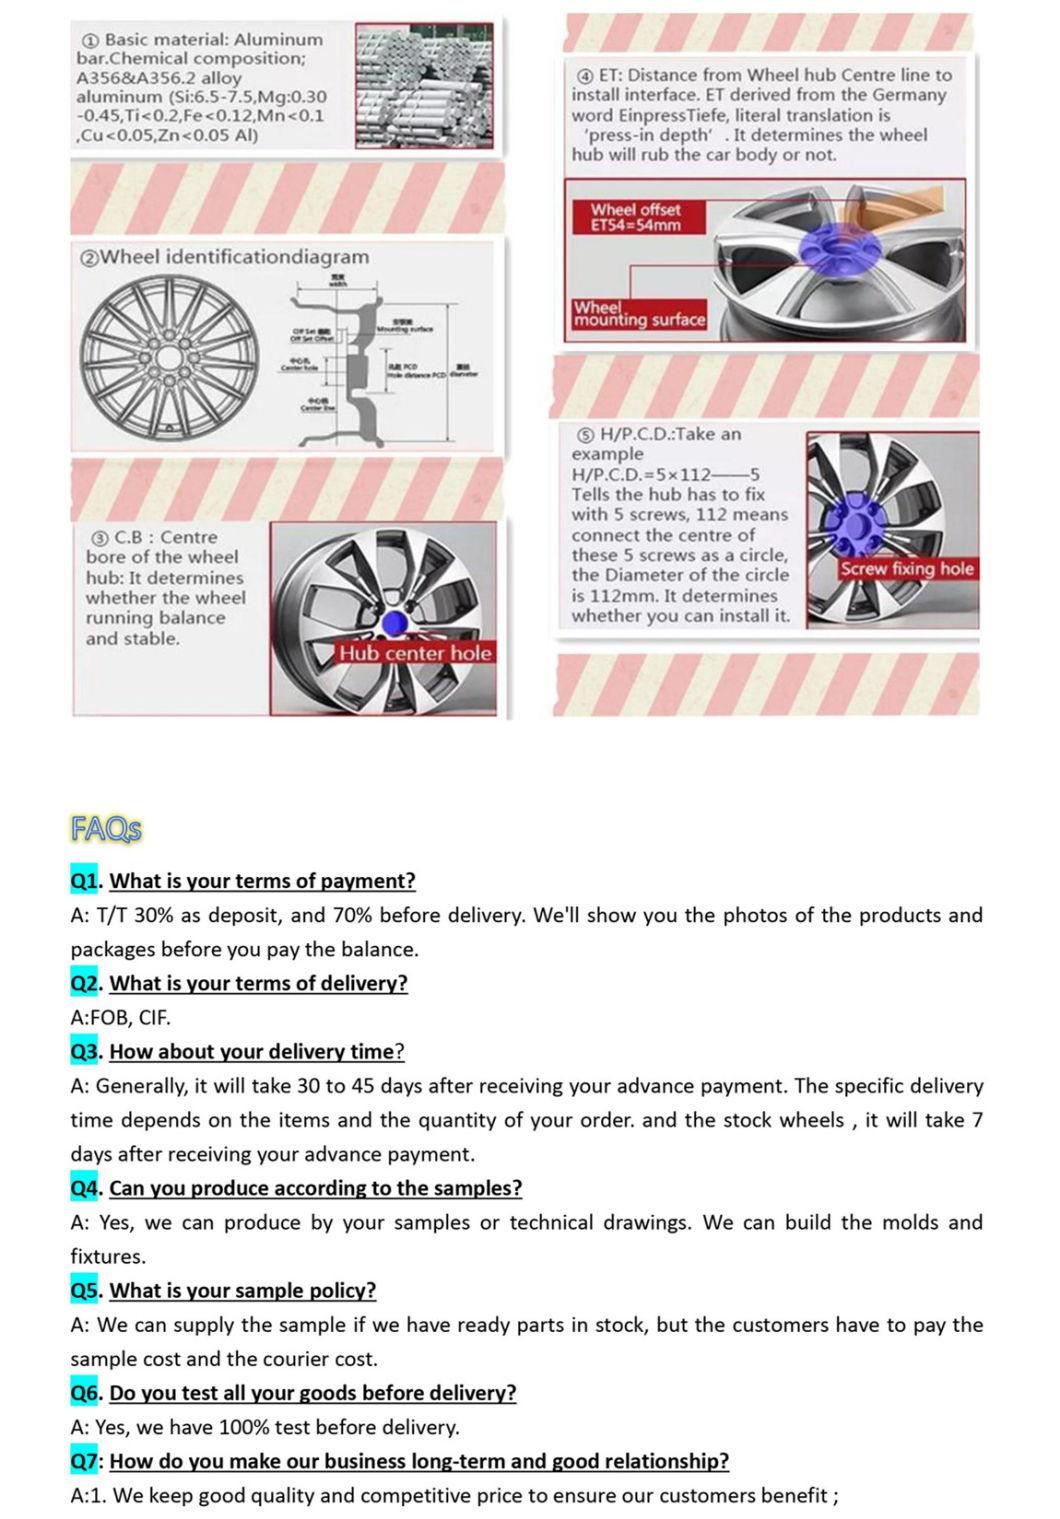 Replica Wheels Passenger Car Alloy Wheel Rims Full Size Available for Skoda